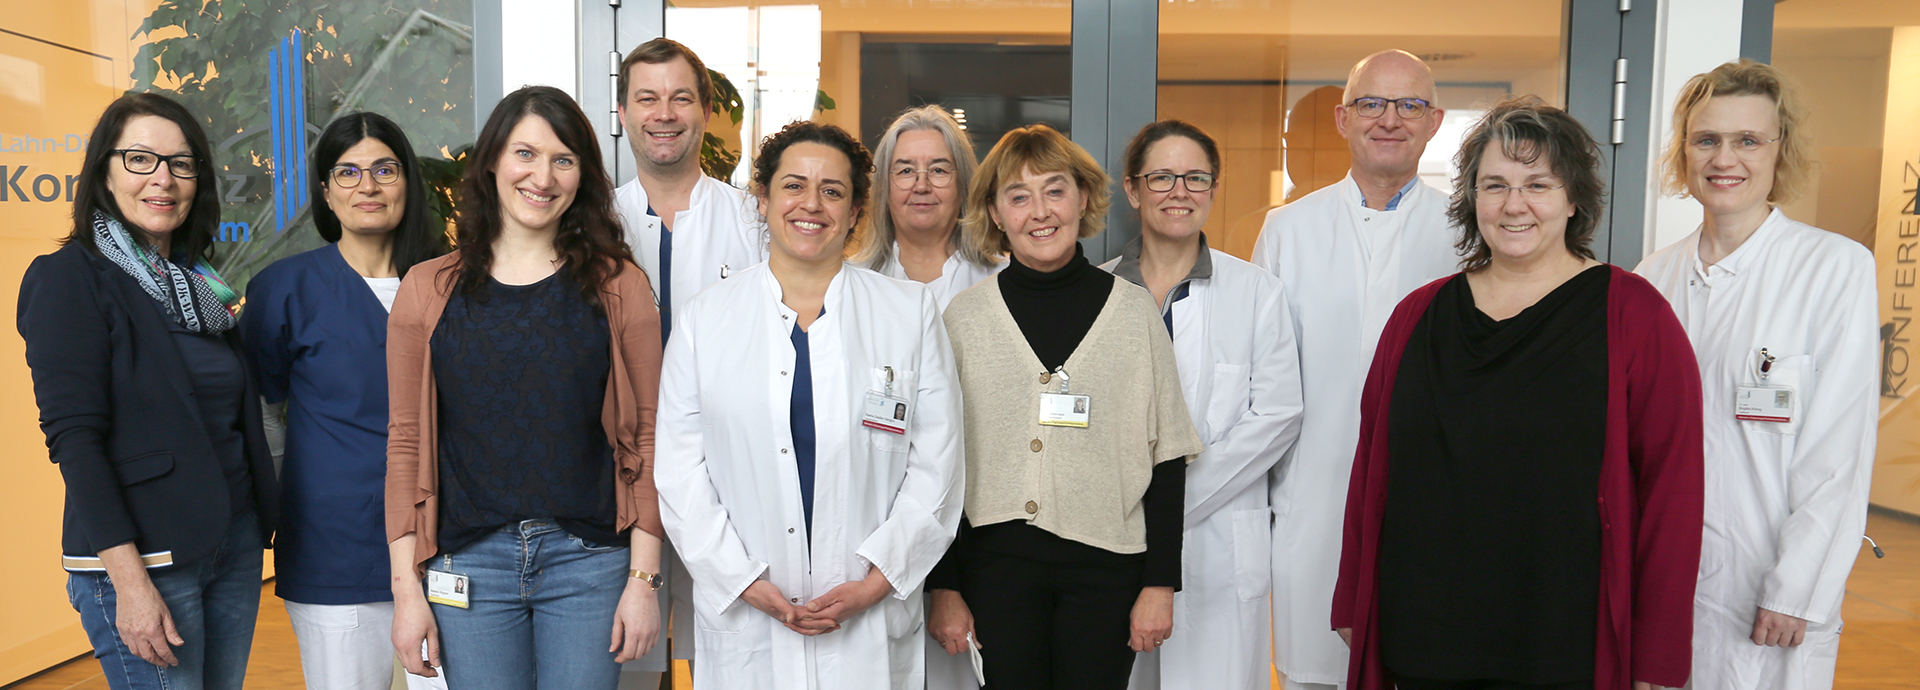 Teambild der Klinik für Hämatologie/Onkologie und Palliativmedizin